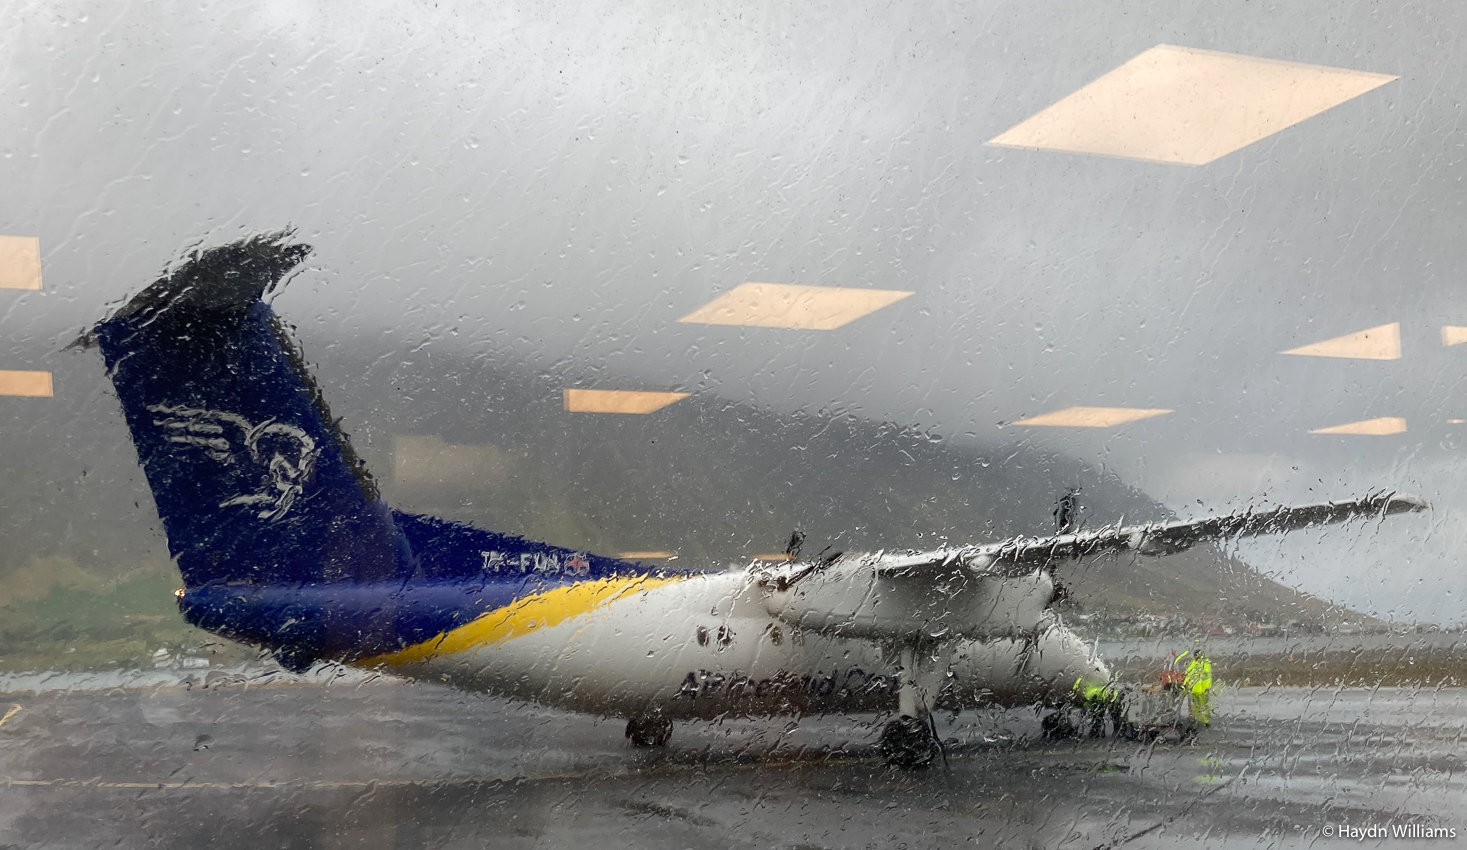 A propellor plane through a rainy window.